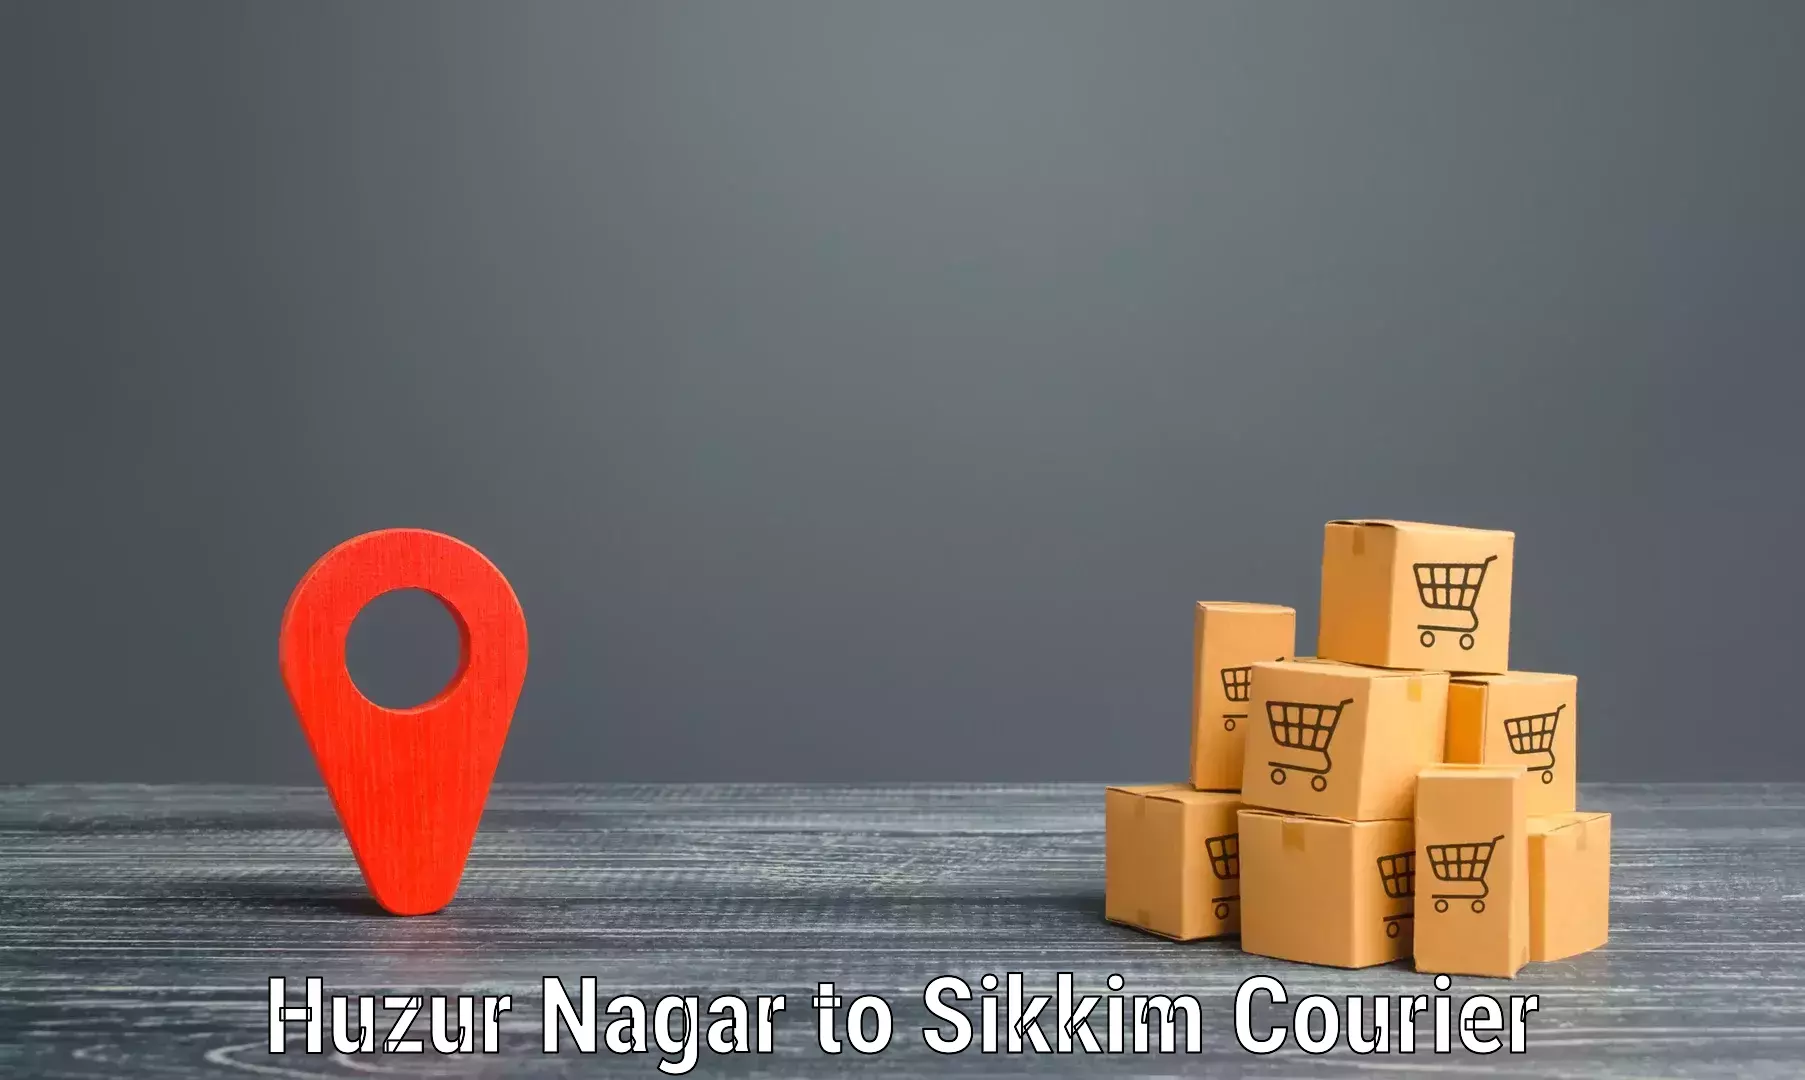 Courier app Huzur Nagar to Rangpo